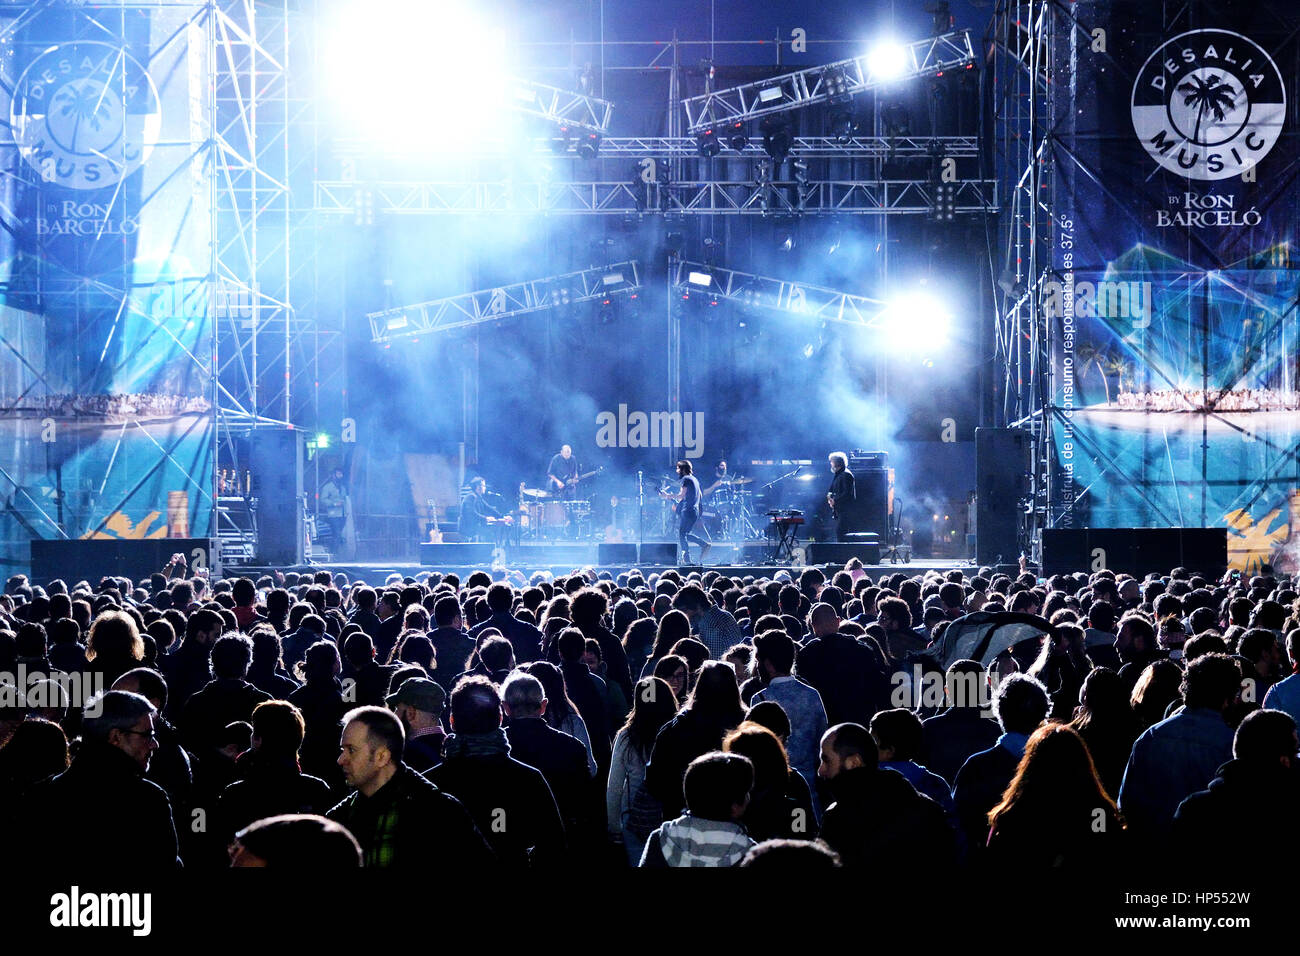 VALENCIA, Espagne - 4 AVR : foule regarder un concert à MBC Fest le 4 avril 2015 à Valence, en Espagne. Banque D'Images